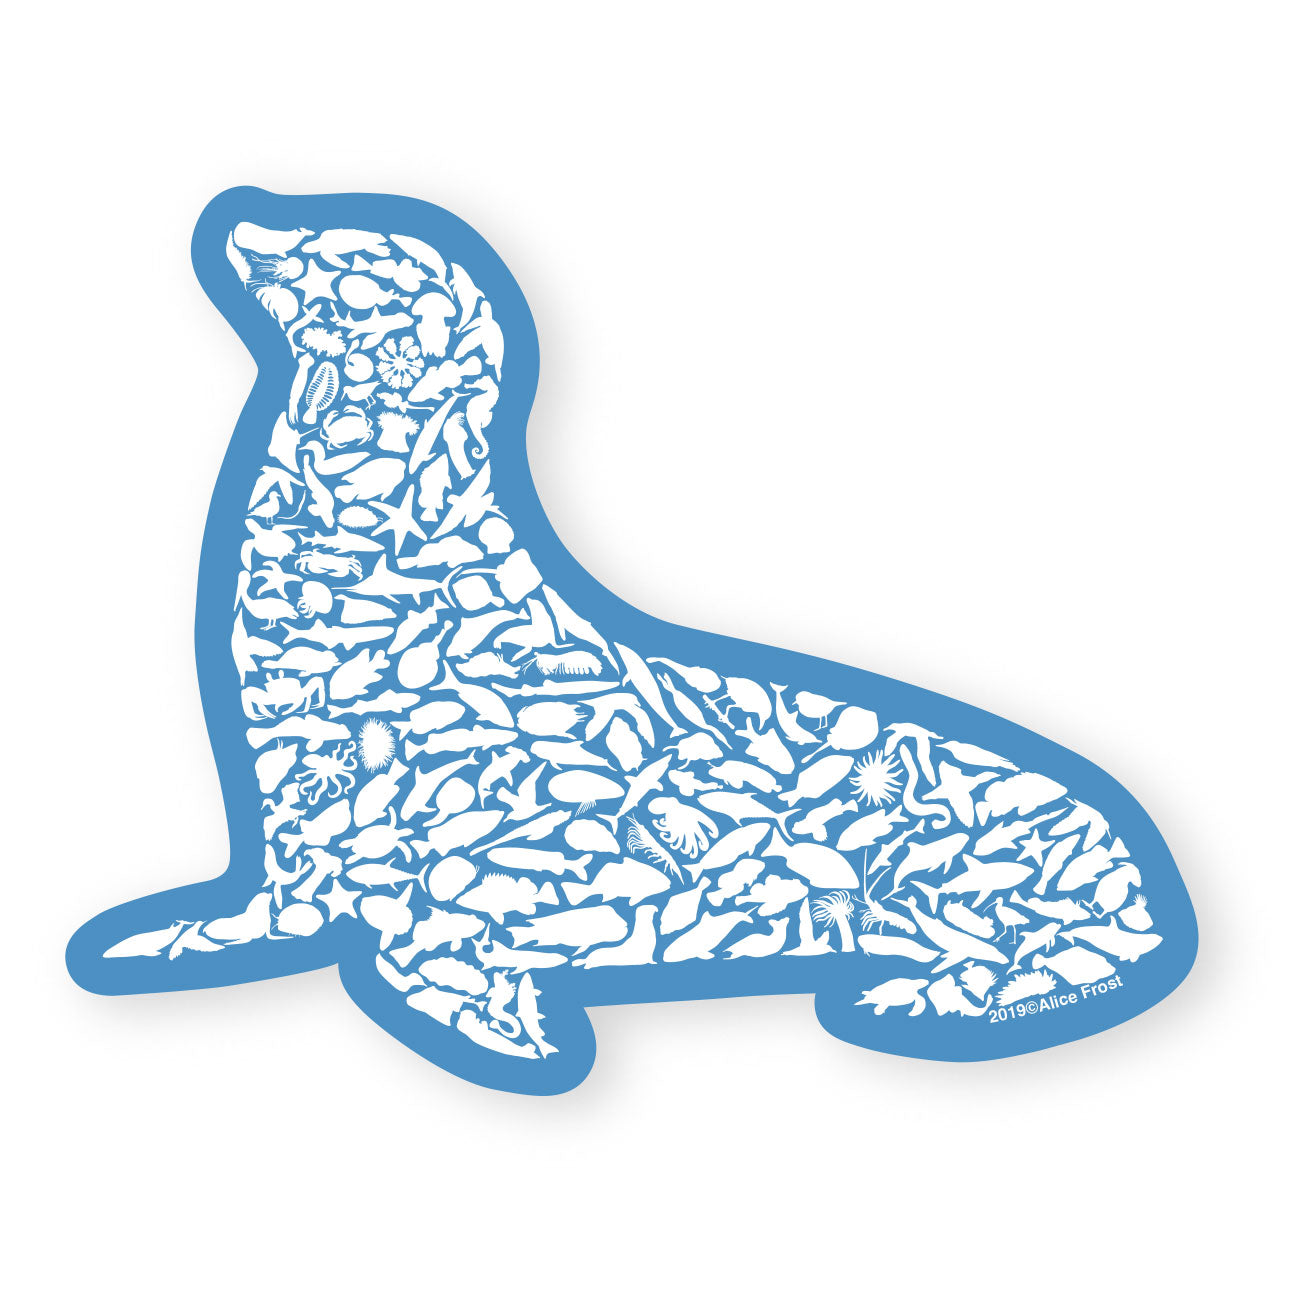 California Sea Lion Sticker - Alice Frost Studio